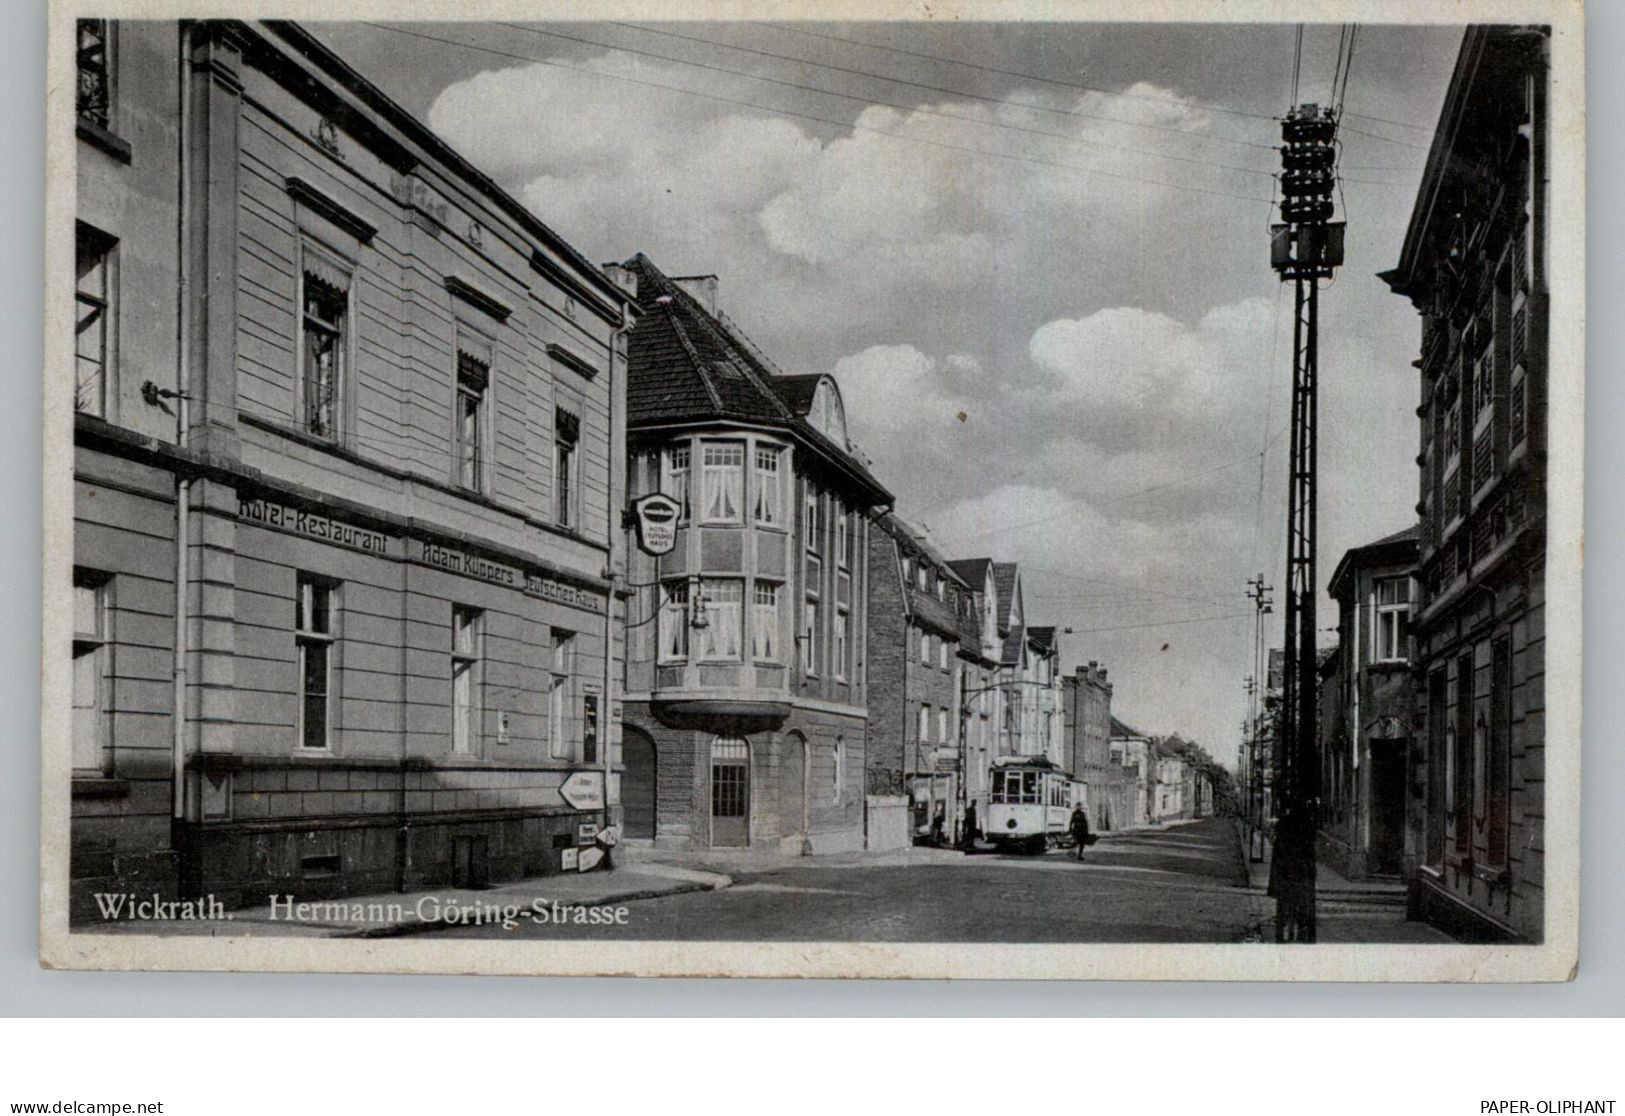 4050 MÖNCHENGLADBACH - WICKRATH, Hermann - Göring - Strasse, Hotel Küppers, Strassenbahn, 1941 - Mönchengladbach